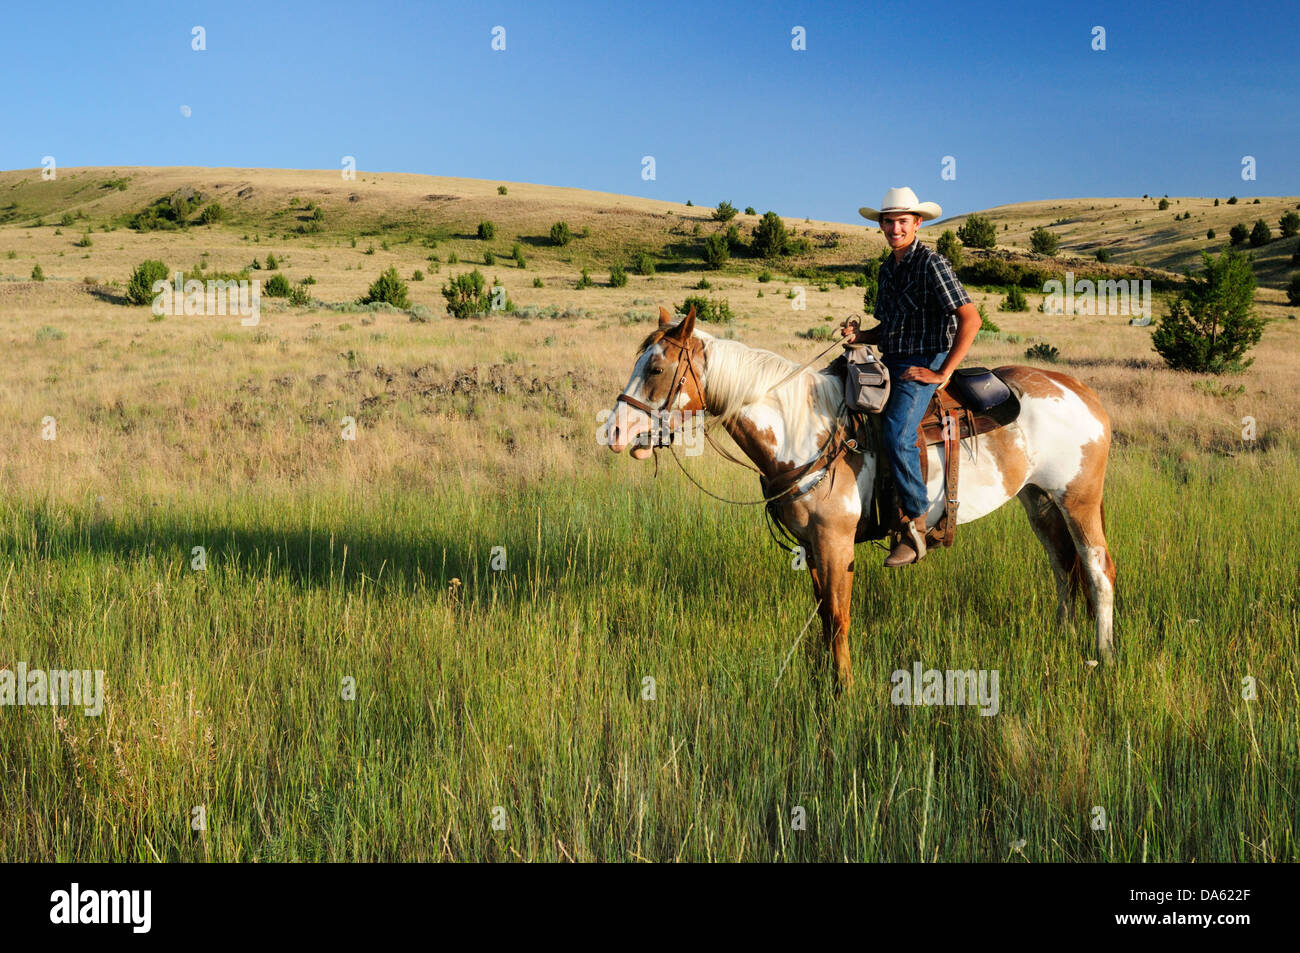 Pacific Northwest, Oregon, Stati Uniti d'America, Stati Uniti, America, equitazione, escursioni a cavallo, sport, cavallo, ranch, cowboy, erba, verde Foto Stock